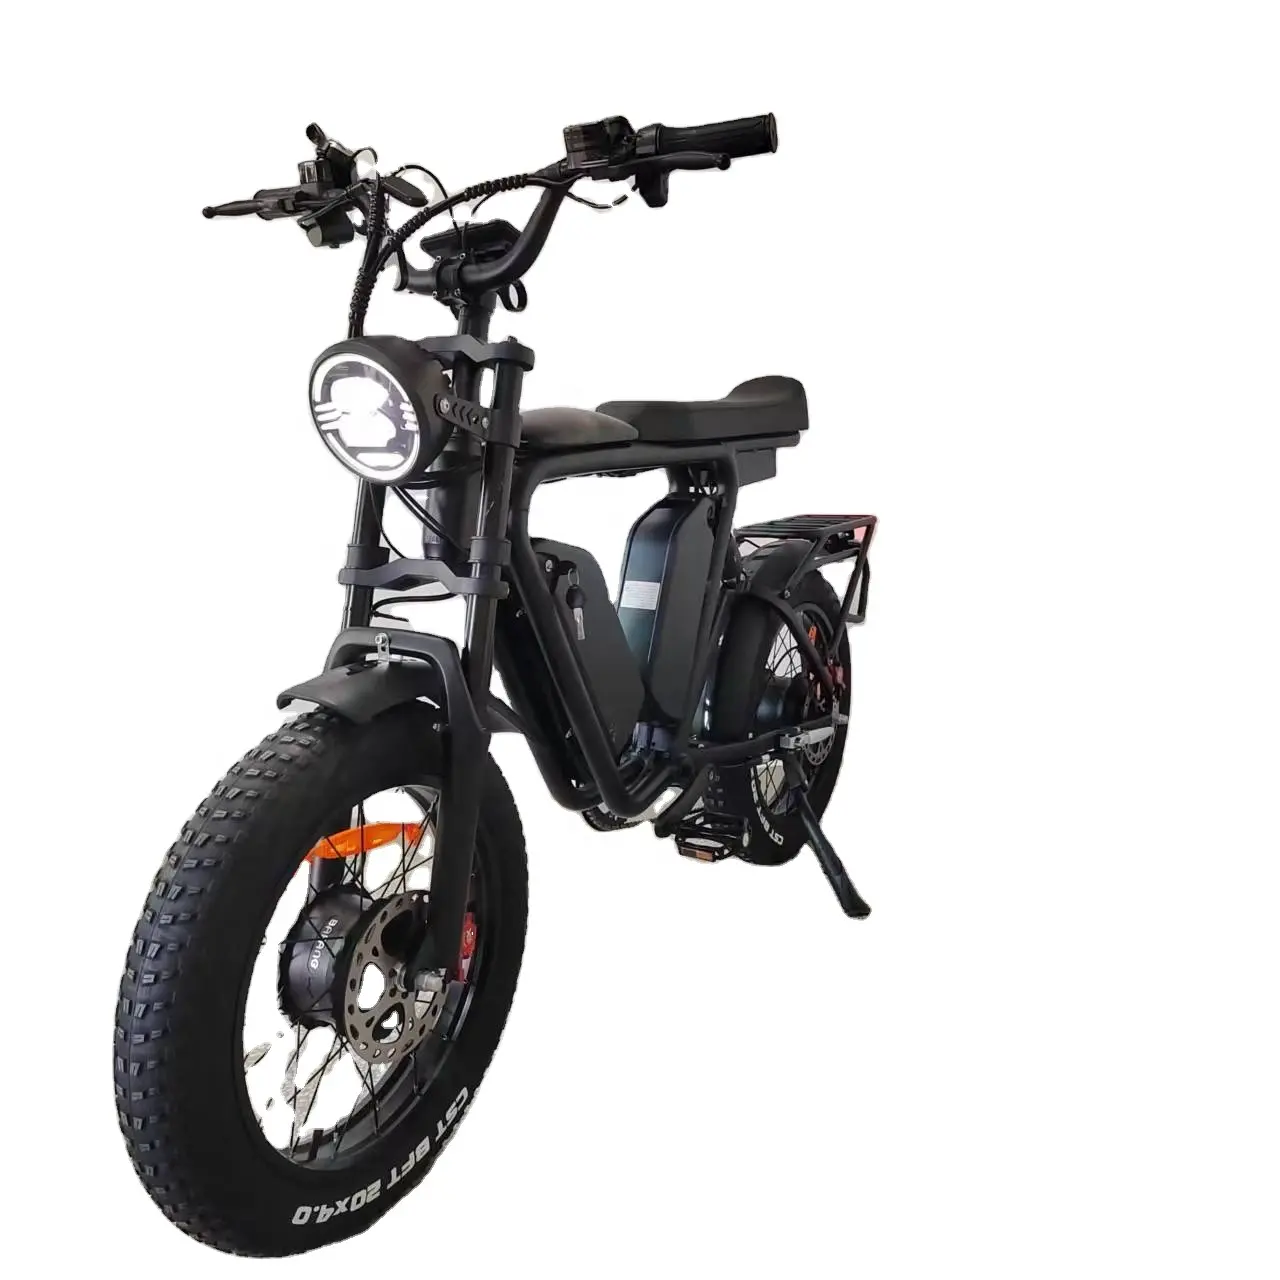 Bafang-bicicleta eléctrica de doble Motor, 48V, 1000 wx2, batería Dual coreana, 44Ah, freno de aceite, suspensión completa, asiento largo, neumático ancho, rápido